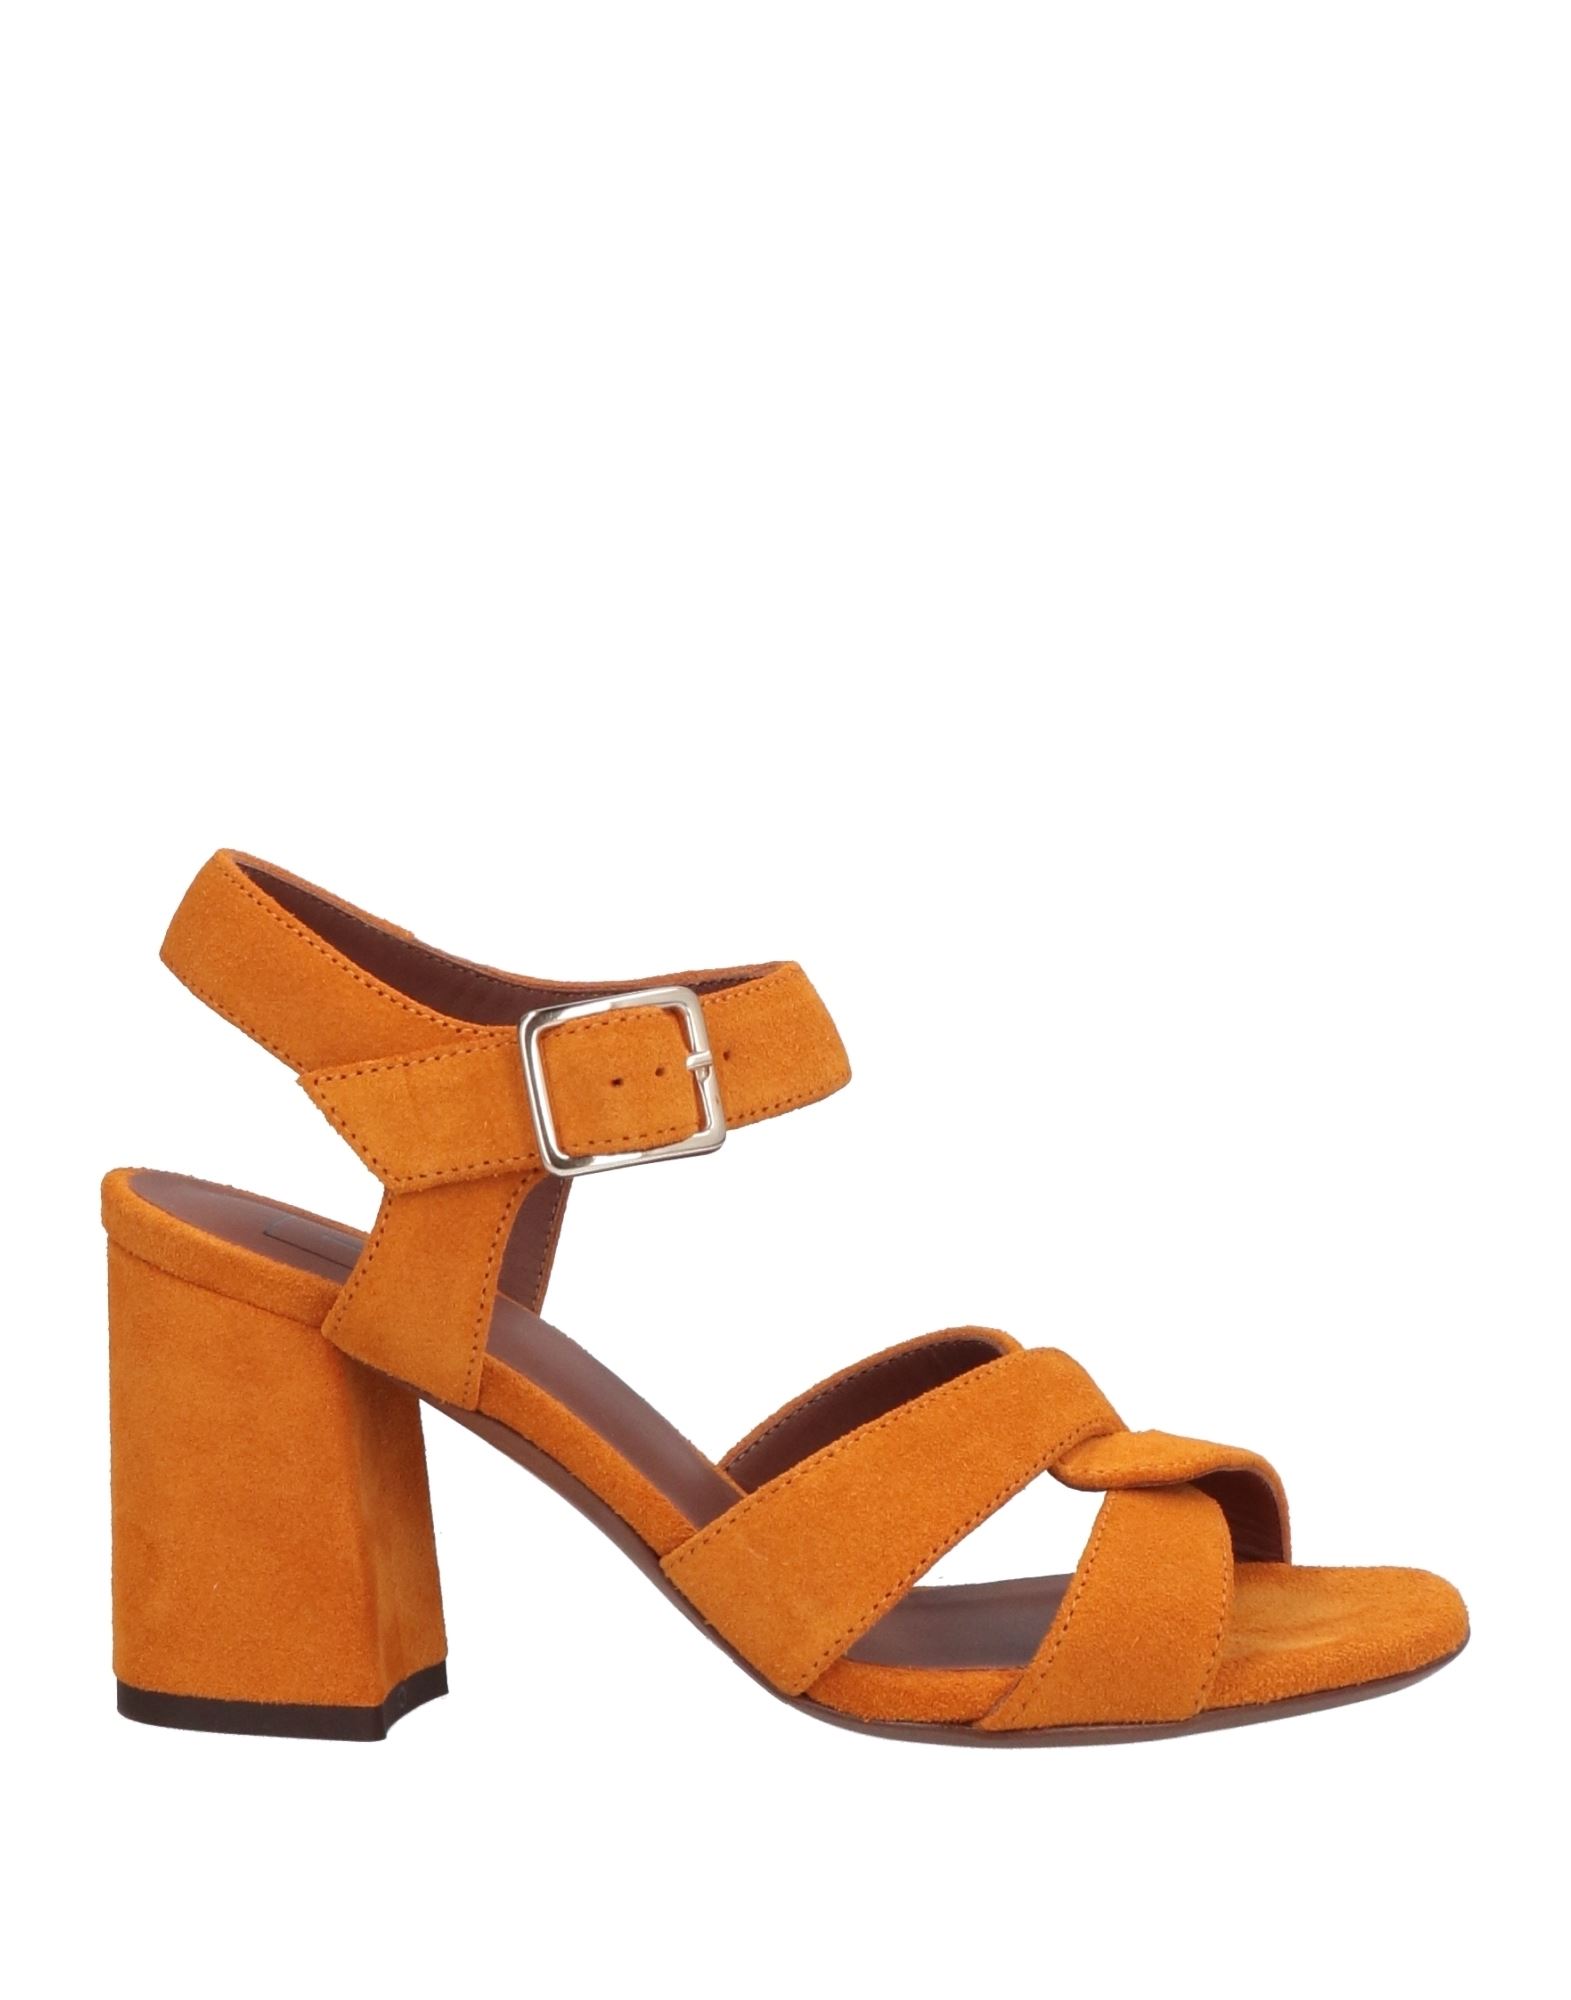 L'autre Chose L' Autre Chose Woman Sandals Orange Size 6 Leather